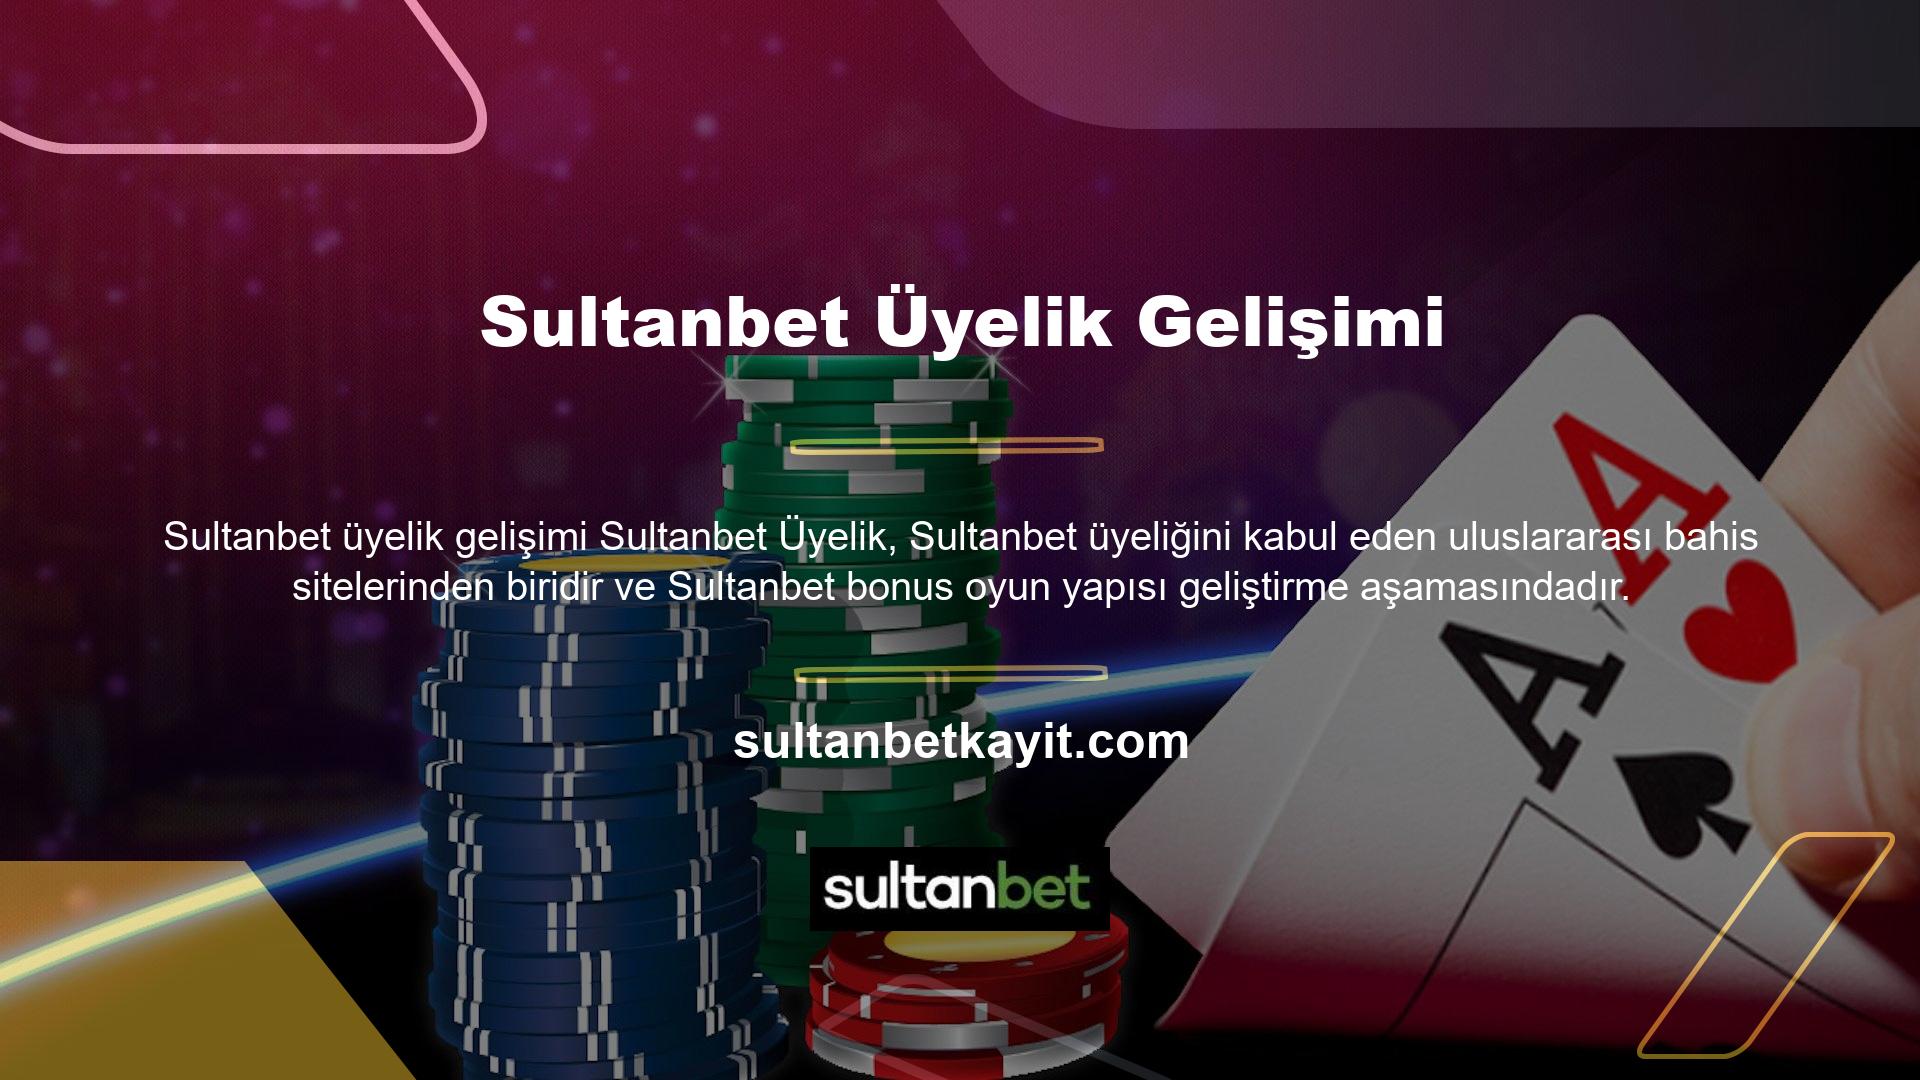 Sultanbet üyeliği, Türkiye'den kullanıcı kabul eden ve üye kazanmaya devam eden oyun yapısı nedeniyle diğer bahis şirketlerinden daha popülerdir